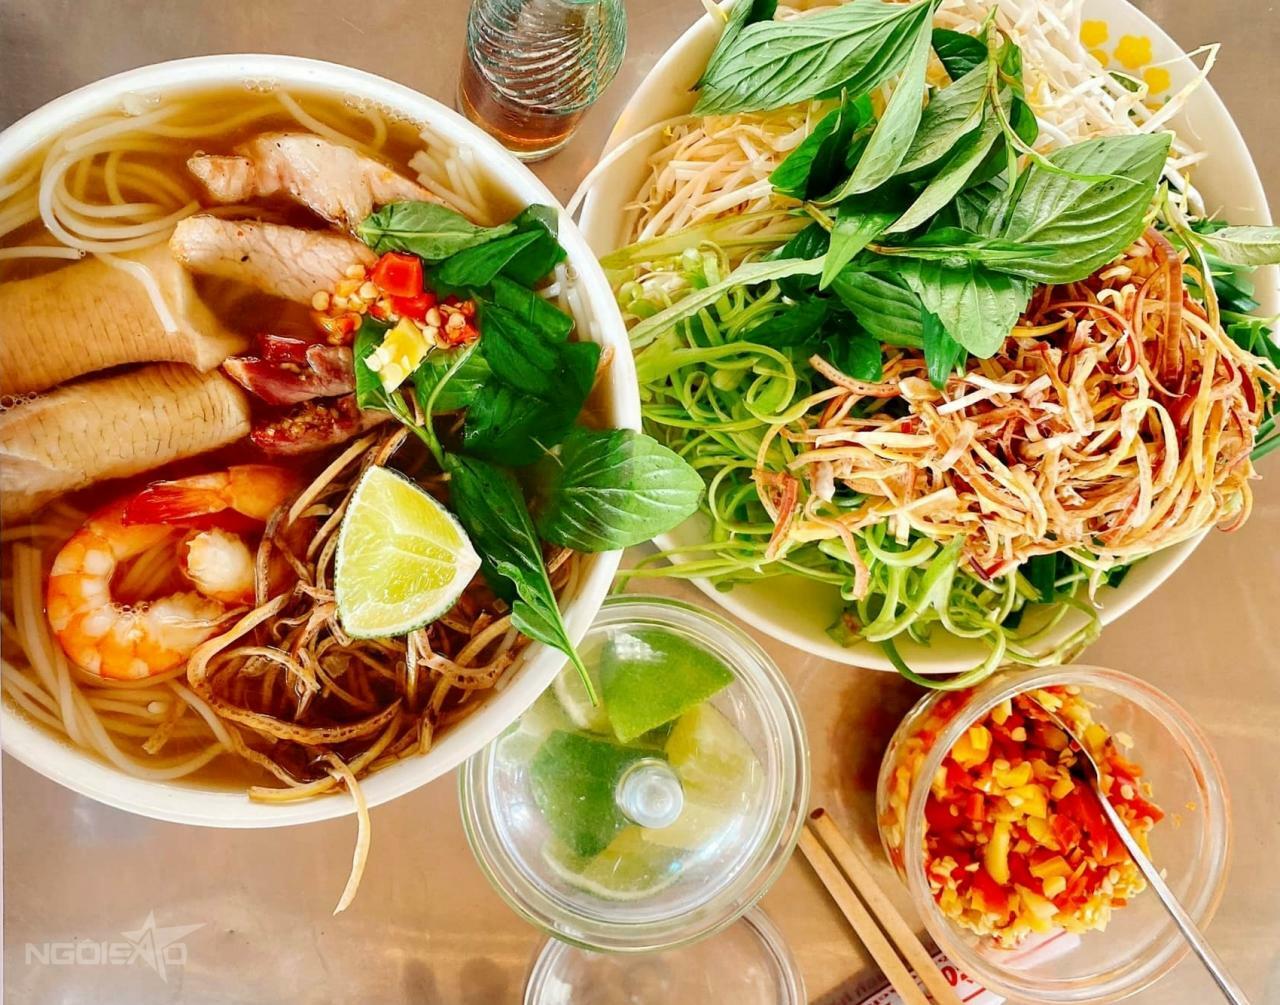 Bún nước lèo, món kết hợp ẩm thực dân tộc Kinh - Hoa - Khmer